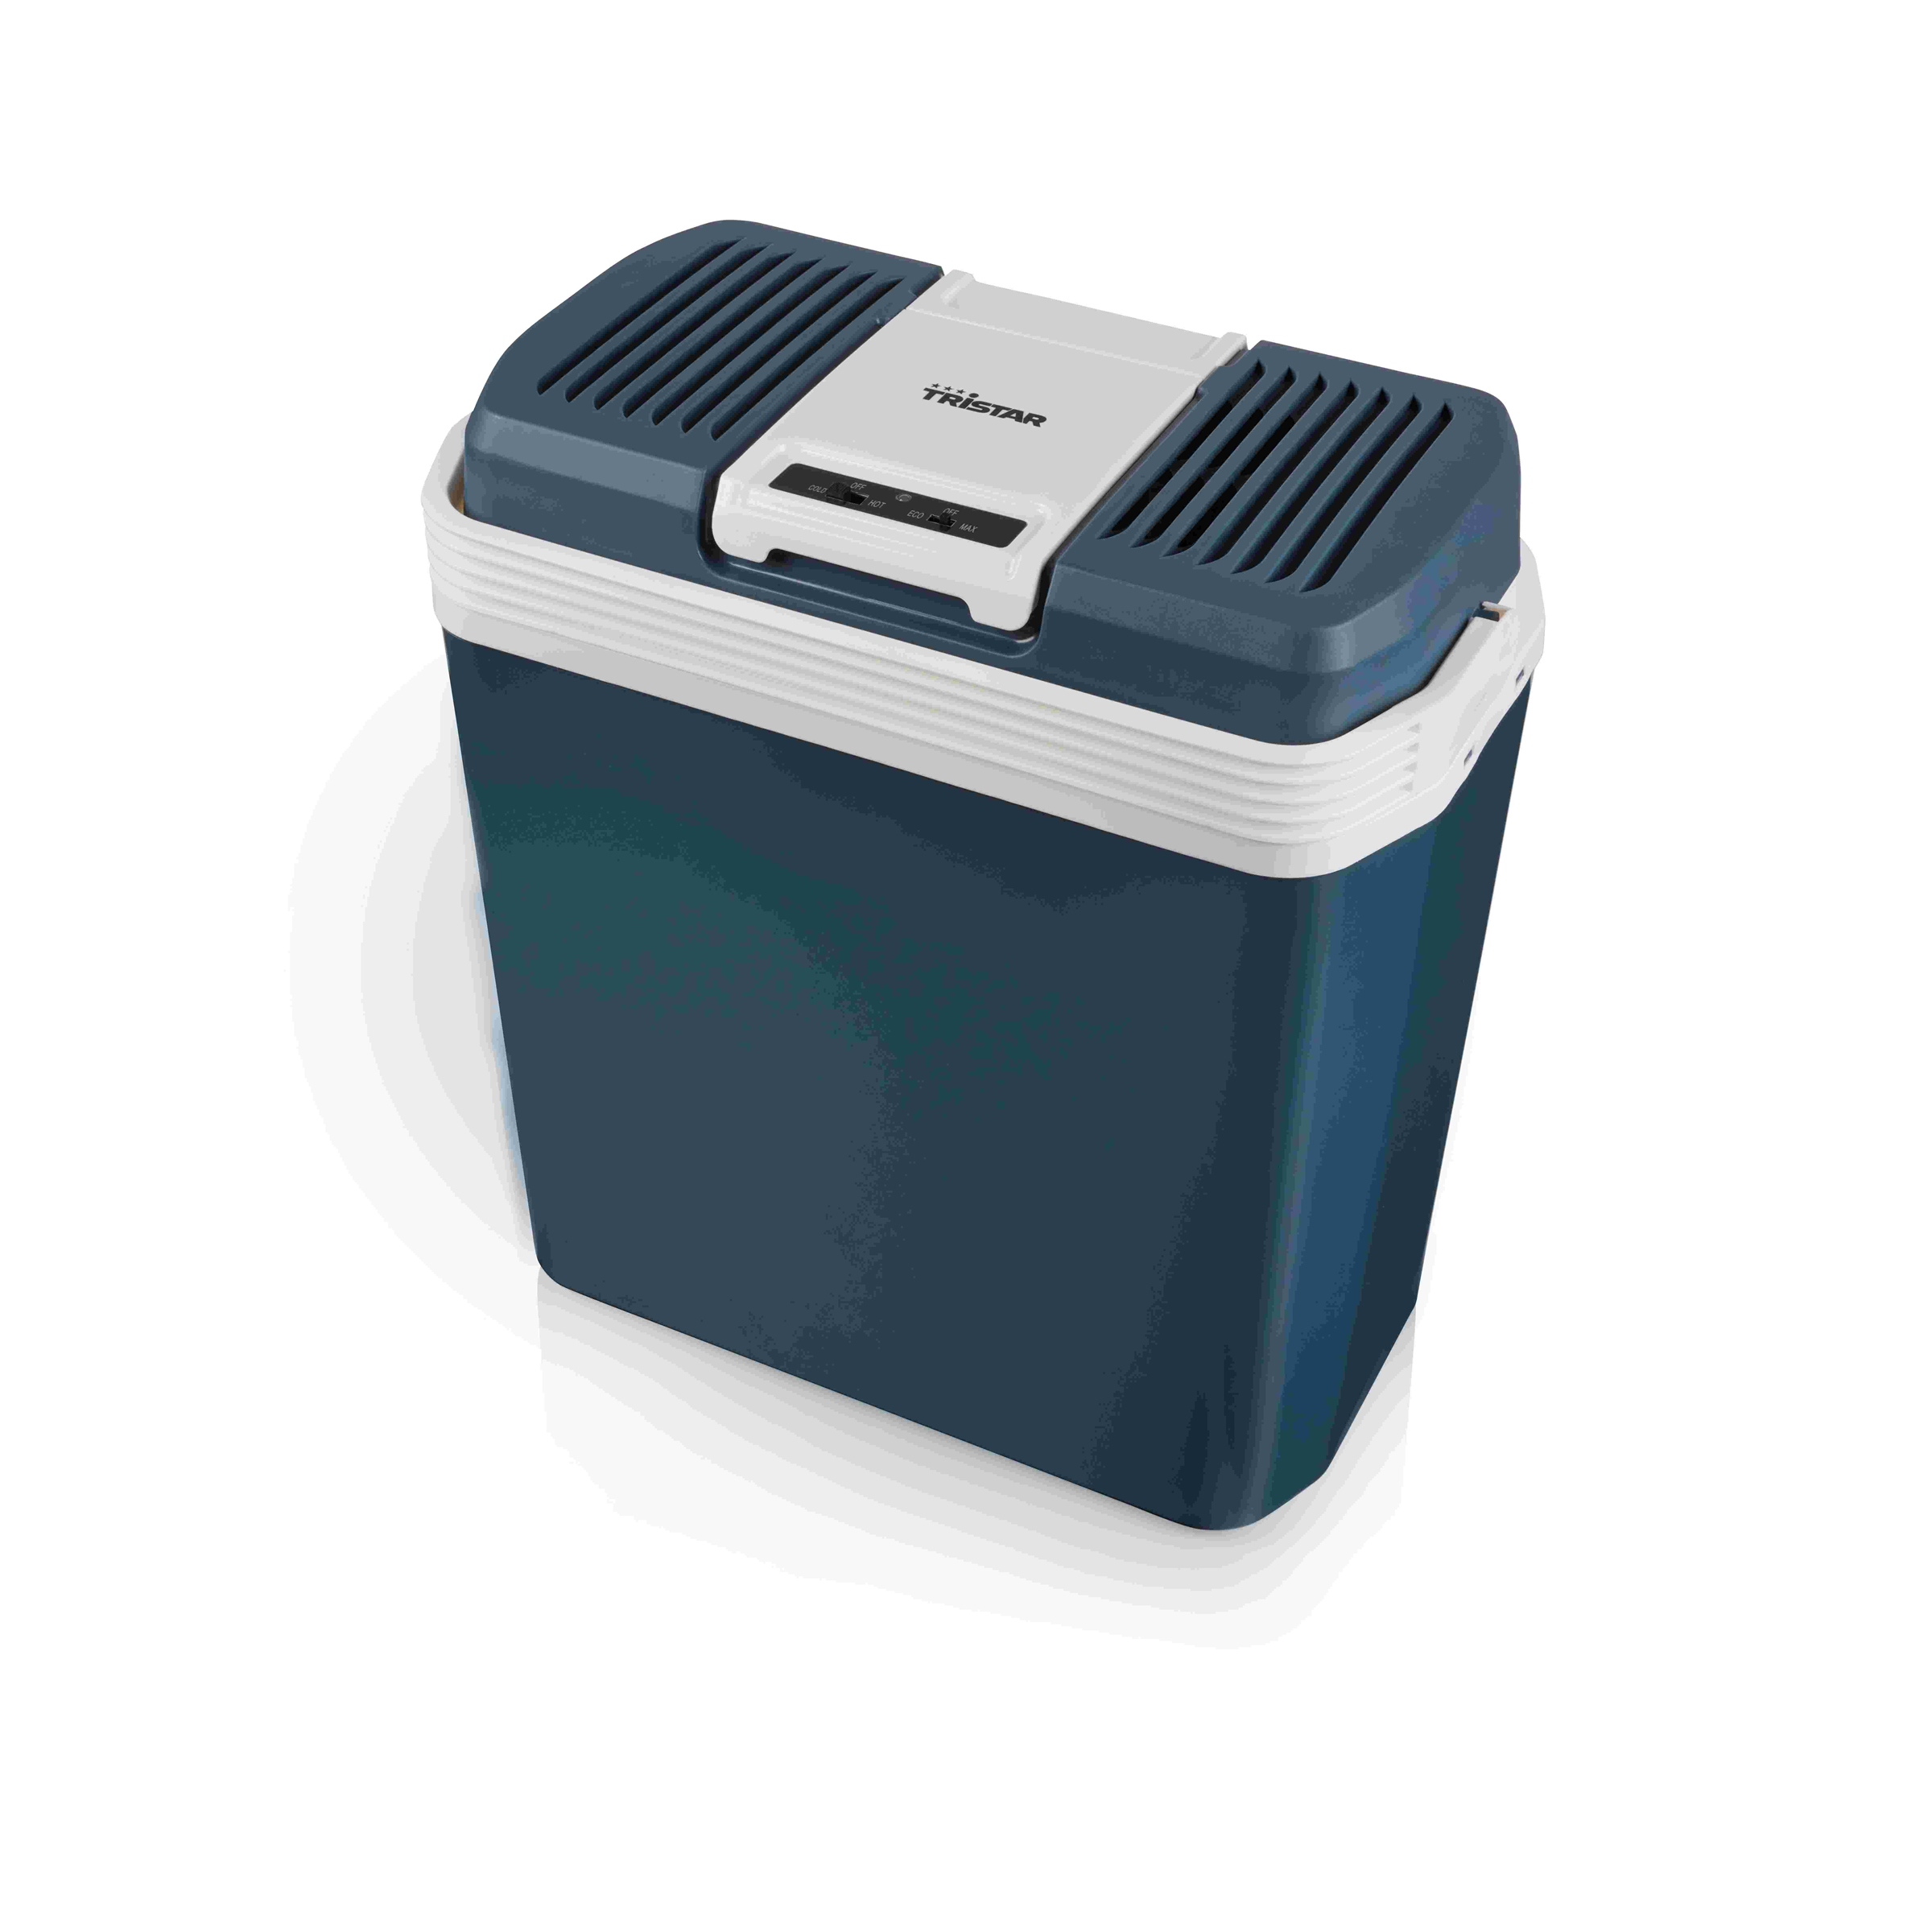 Kühlbox / Warmhaltebehälter, 20 Liter, 12/230 Volt - Kühlbox mit Heiz-/ Warmahaltefunktion (Heizbox/Rechau)